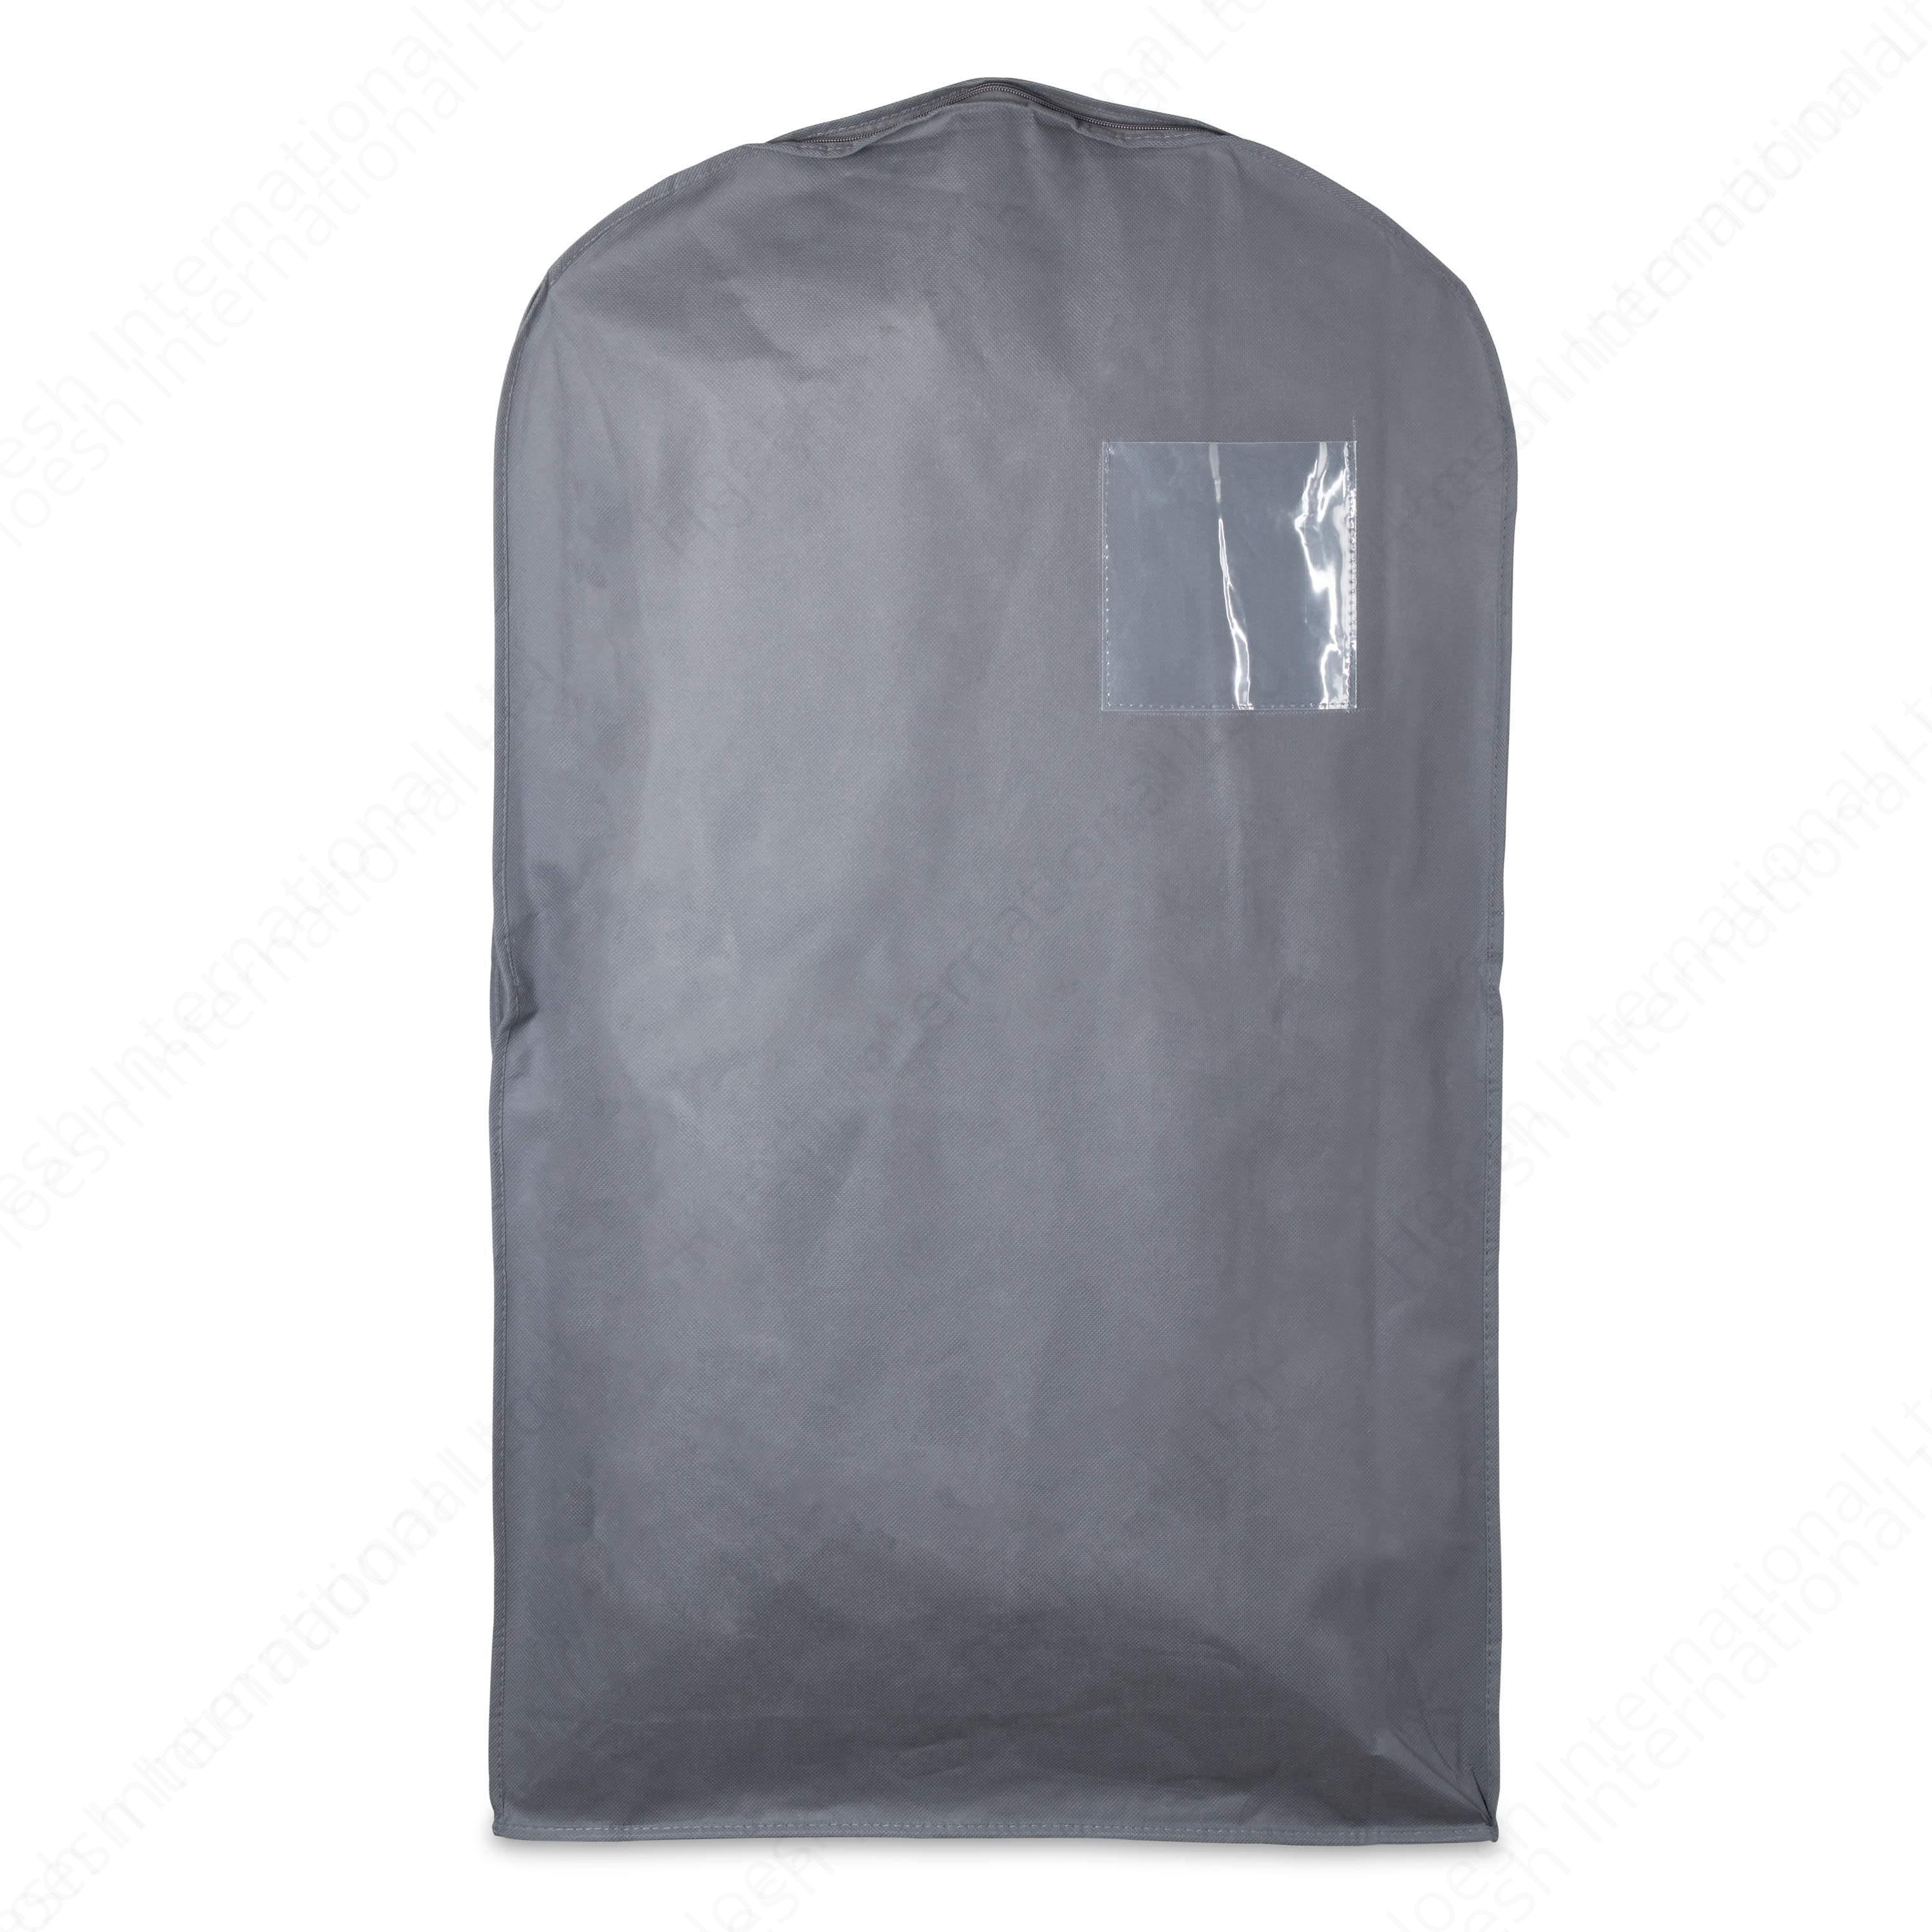 Shirt Service Bags - Hoesh International Ltd